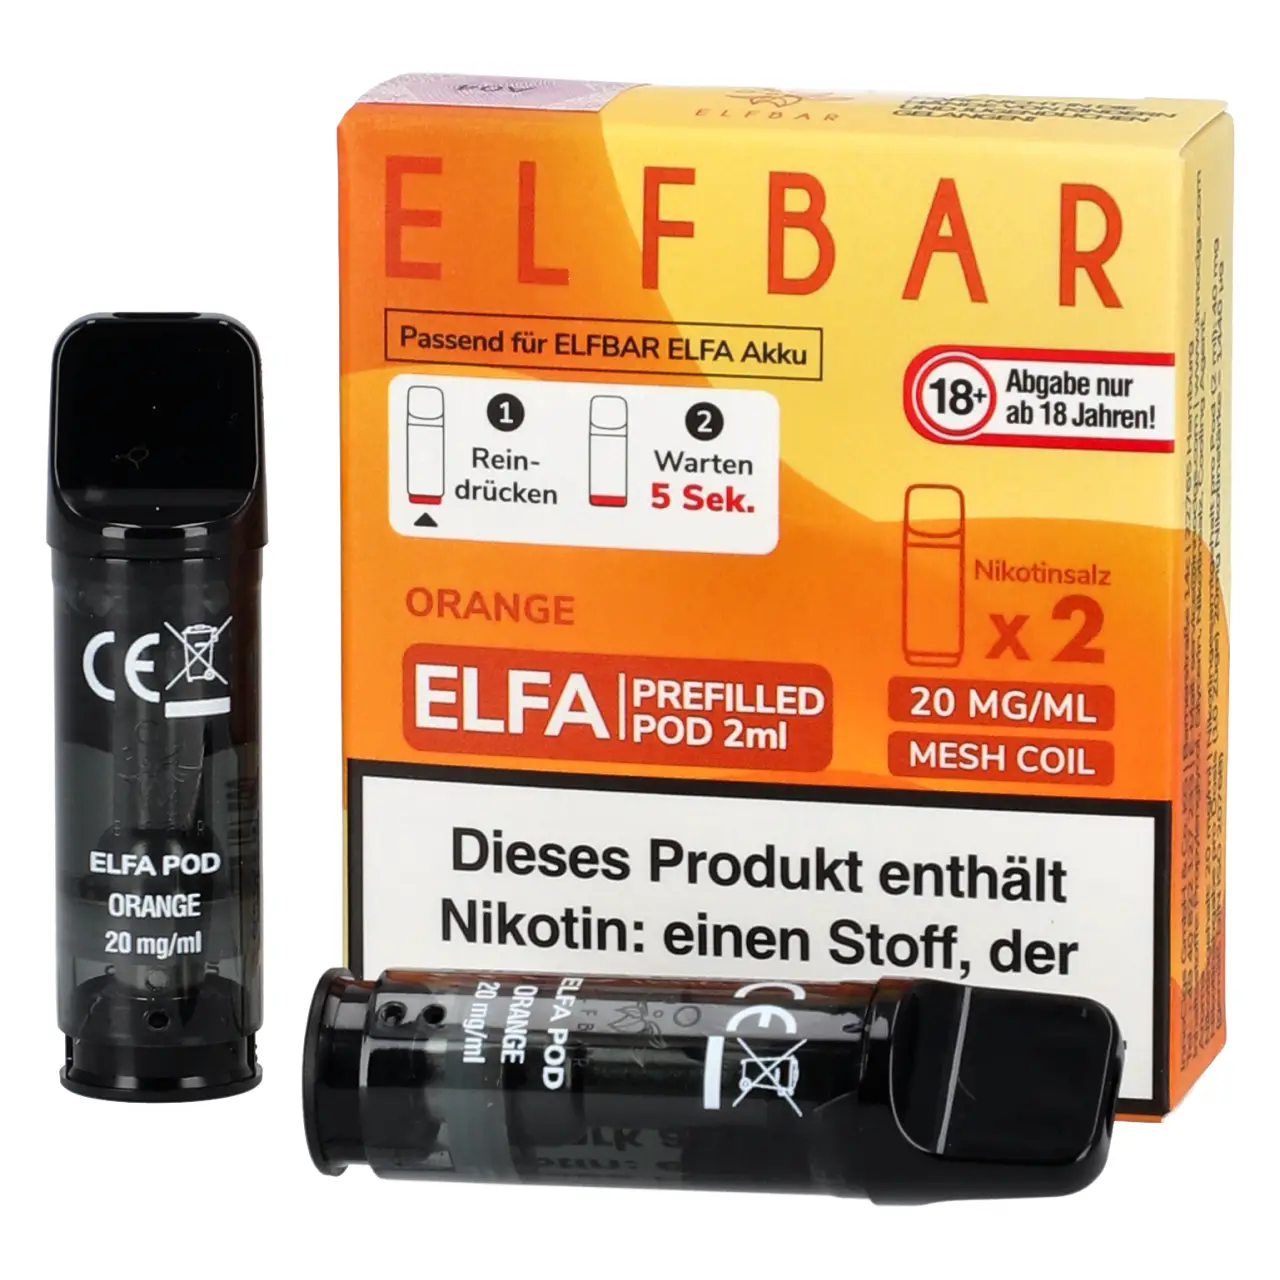 Orange - Elf Bar ELFA Prefilled POD für Mehrweg Vape - befüllt mit 2ml Liquid - 2er Packung